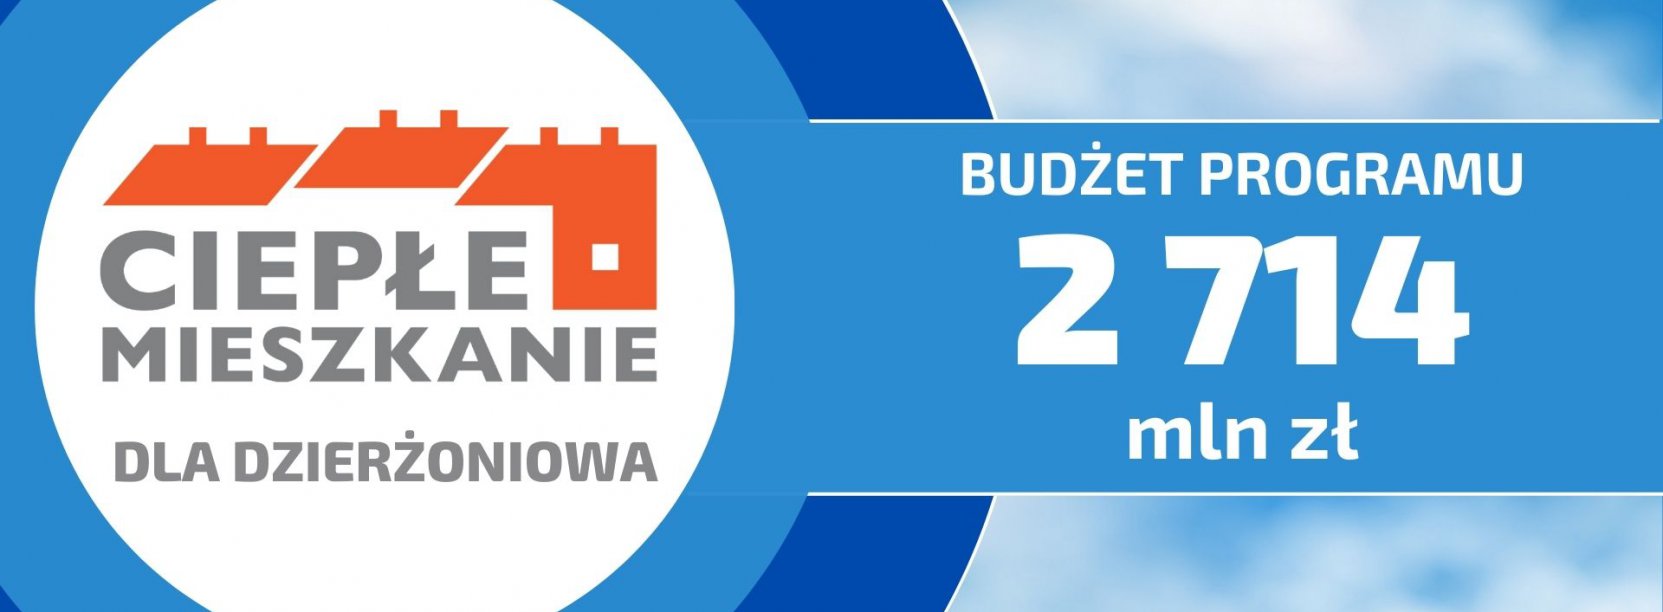 Grafika z napisem Ciepłe mieszkanie dla Dzierżoniowa i budżetem programu w wysokości 2 mln 714 tys. zł.